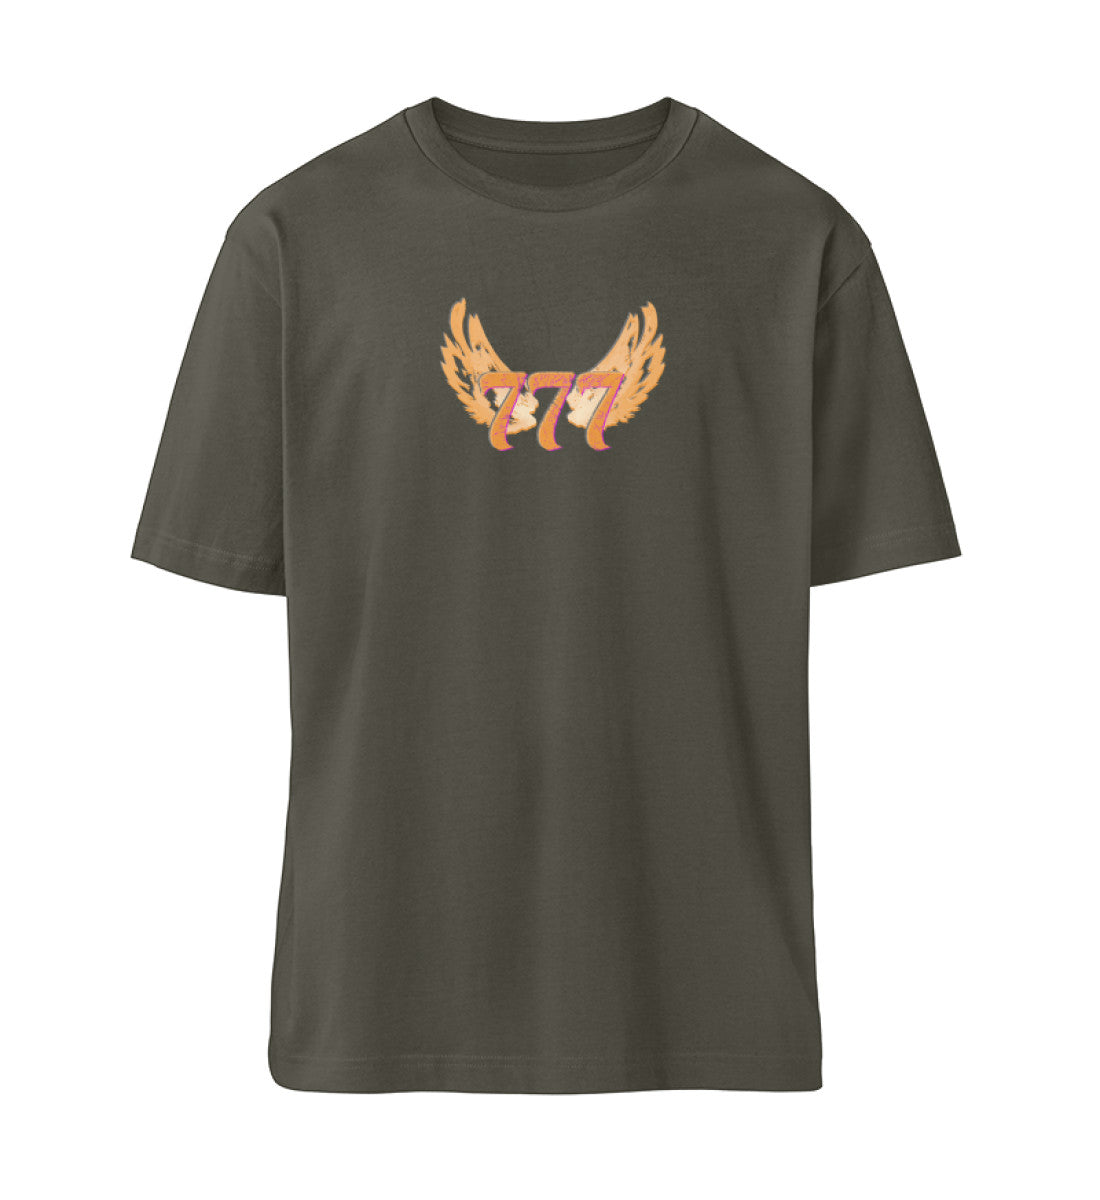 Khaki farbiges T-Shirt Unisex Relaxed Fit für Frauen und Männer bedruckt mit dem Design der Roger Rockawoo Kollektion Engelszahl 777